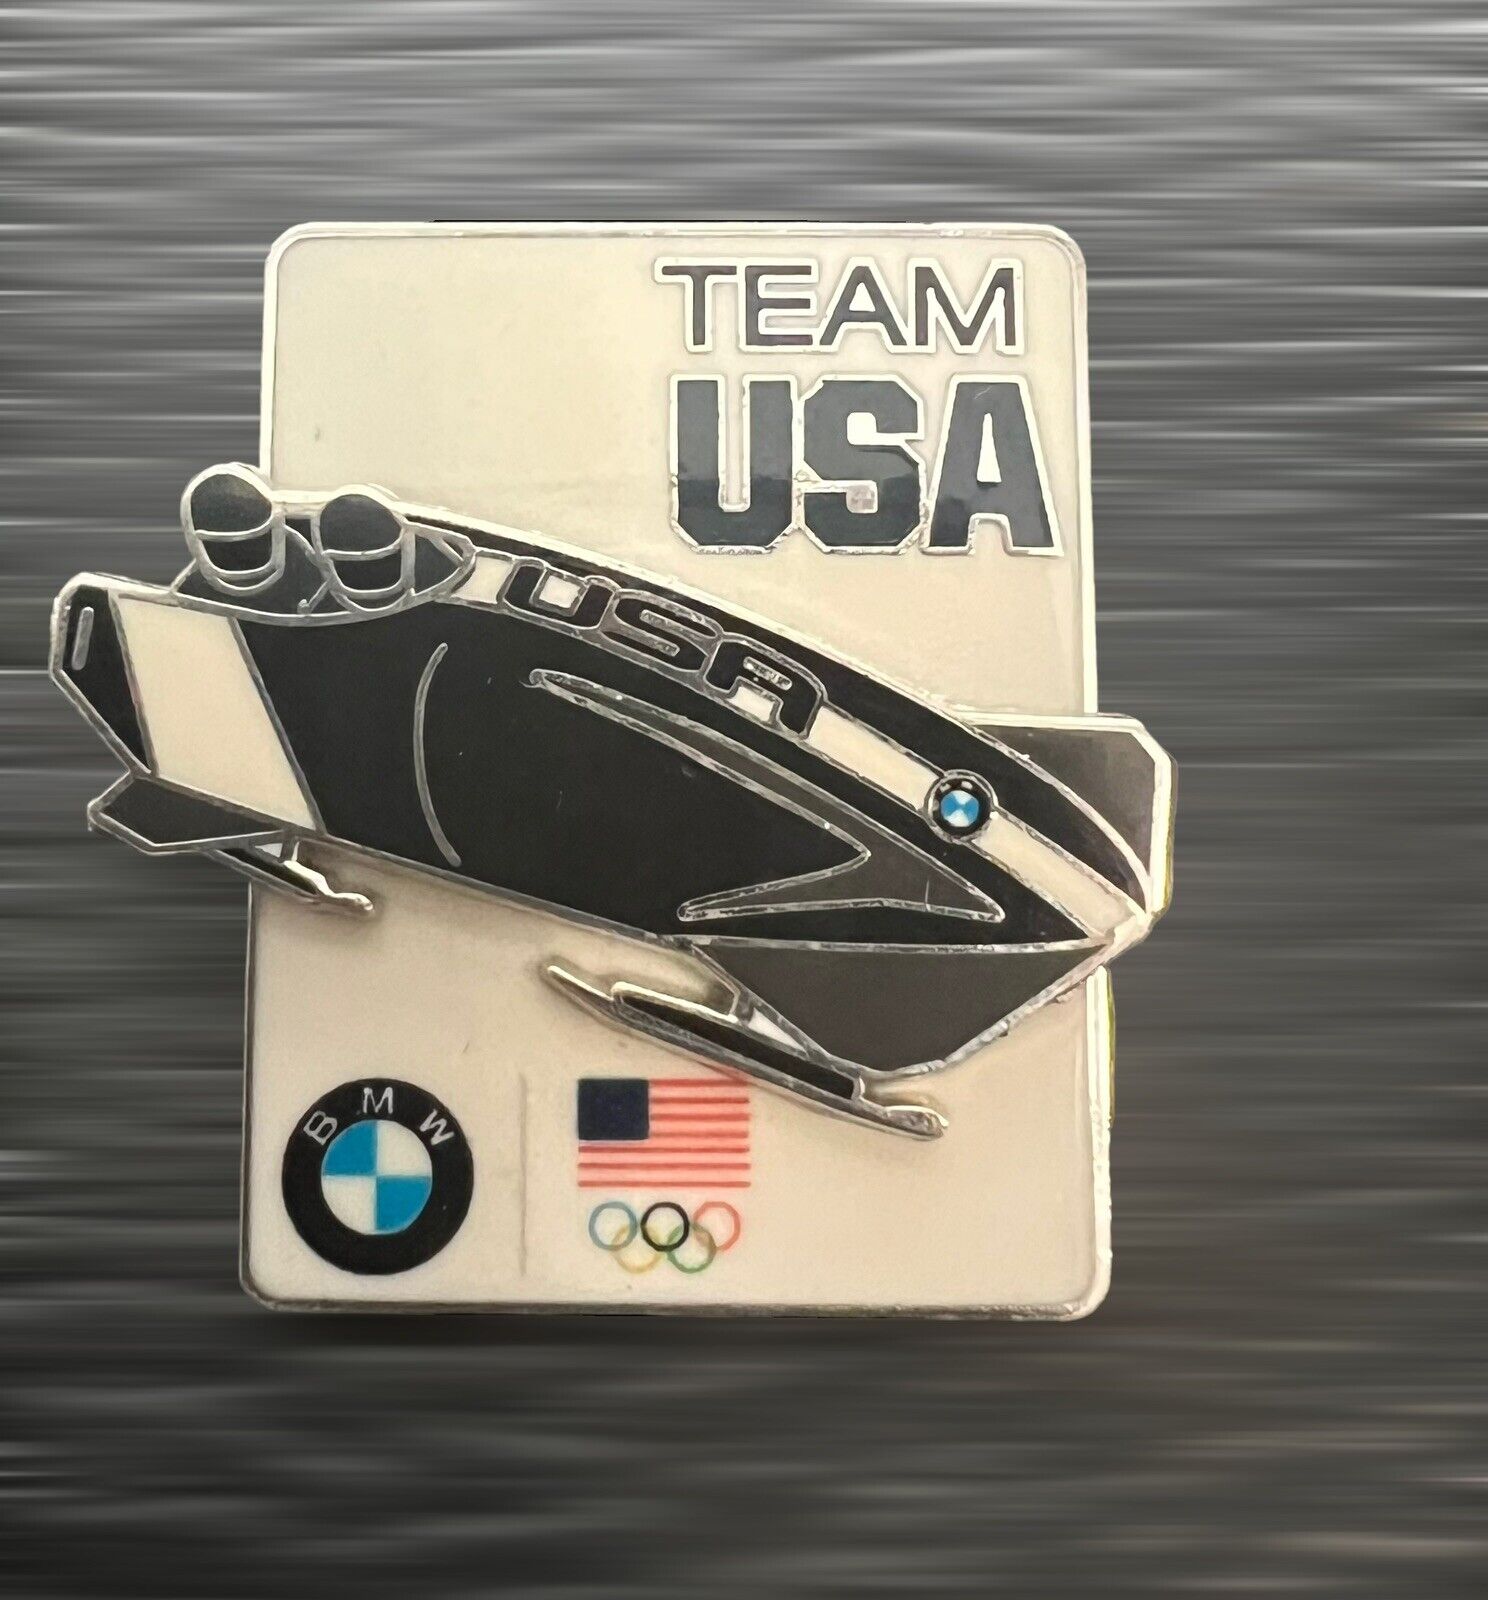 BMW Bobsled Team USA Olympic Lapel Pins Sochi 2014